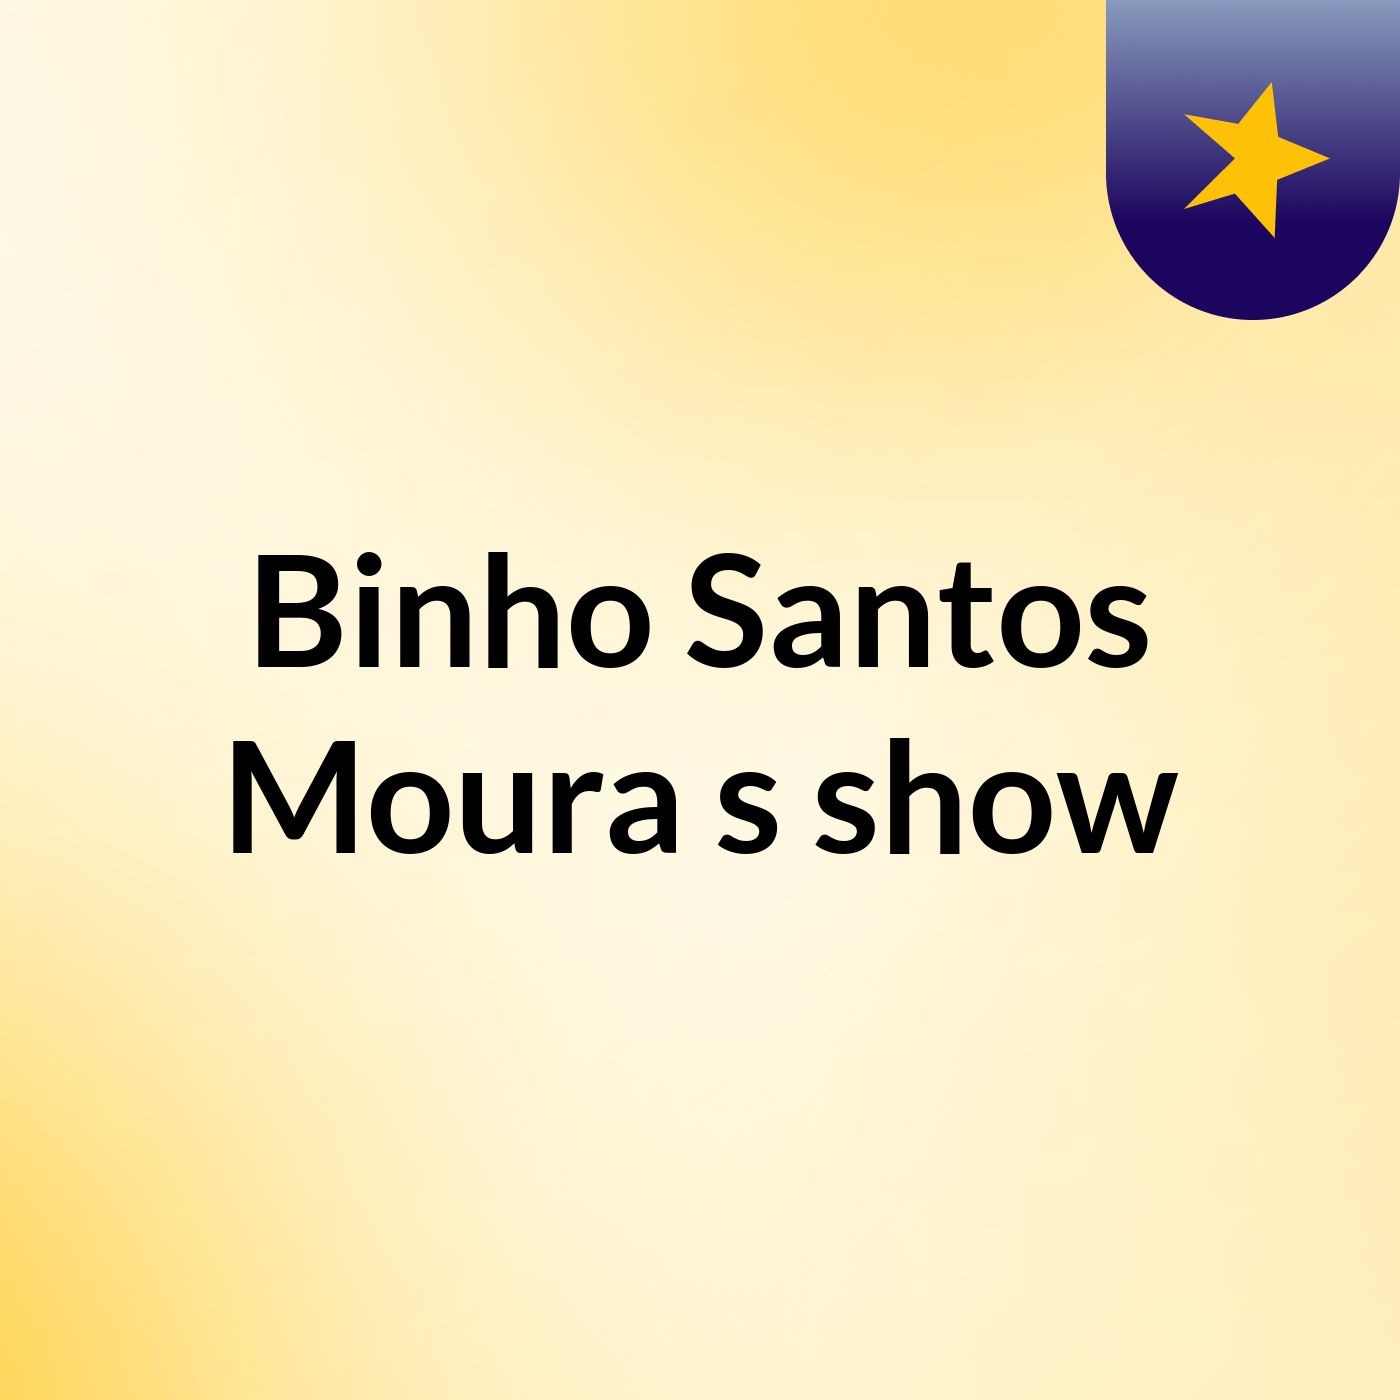 Binho Santos Moura's show